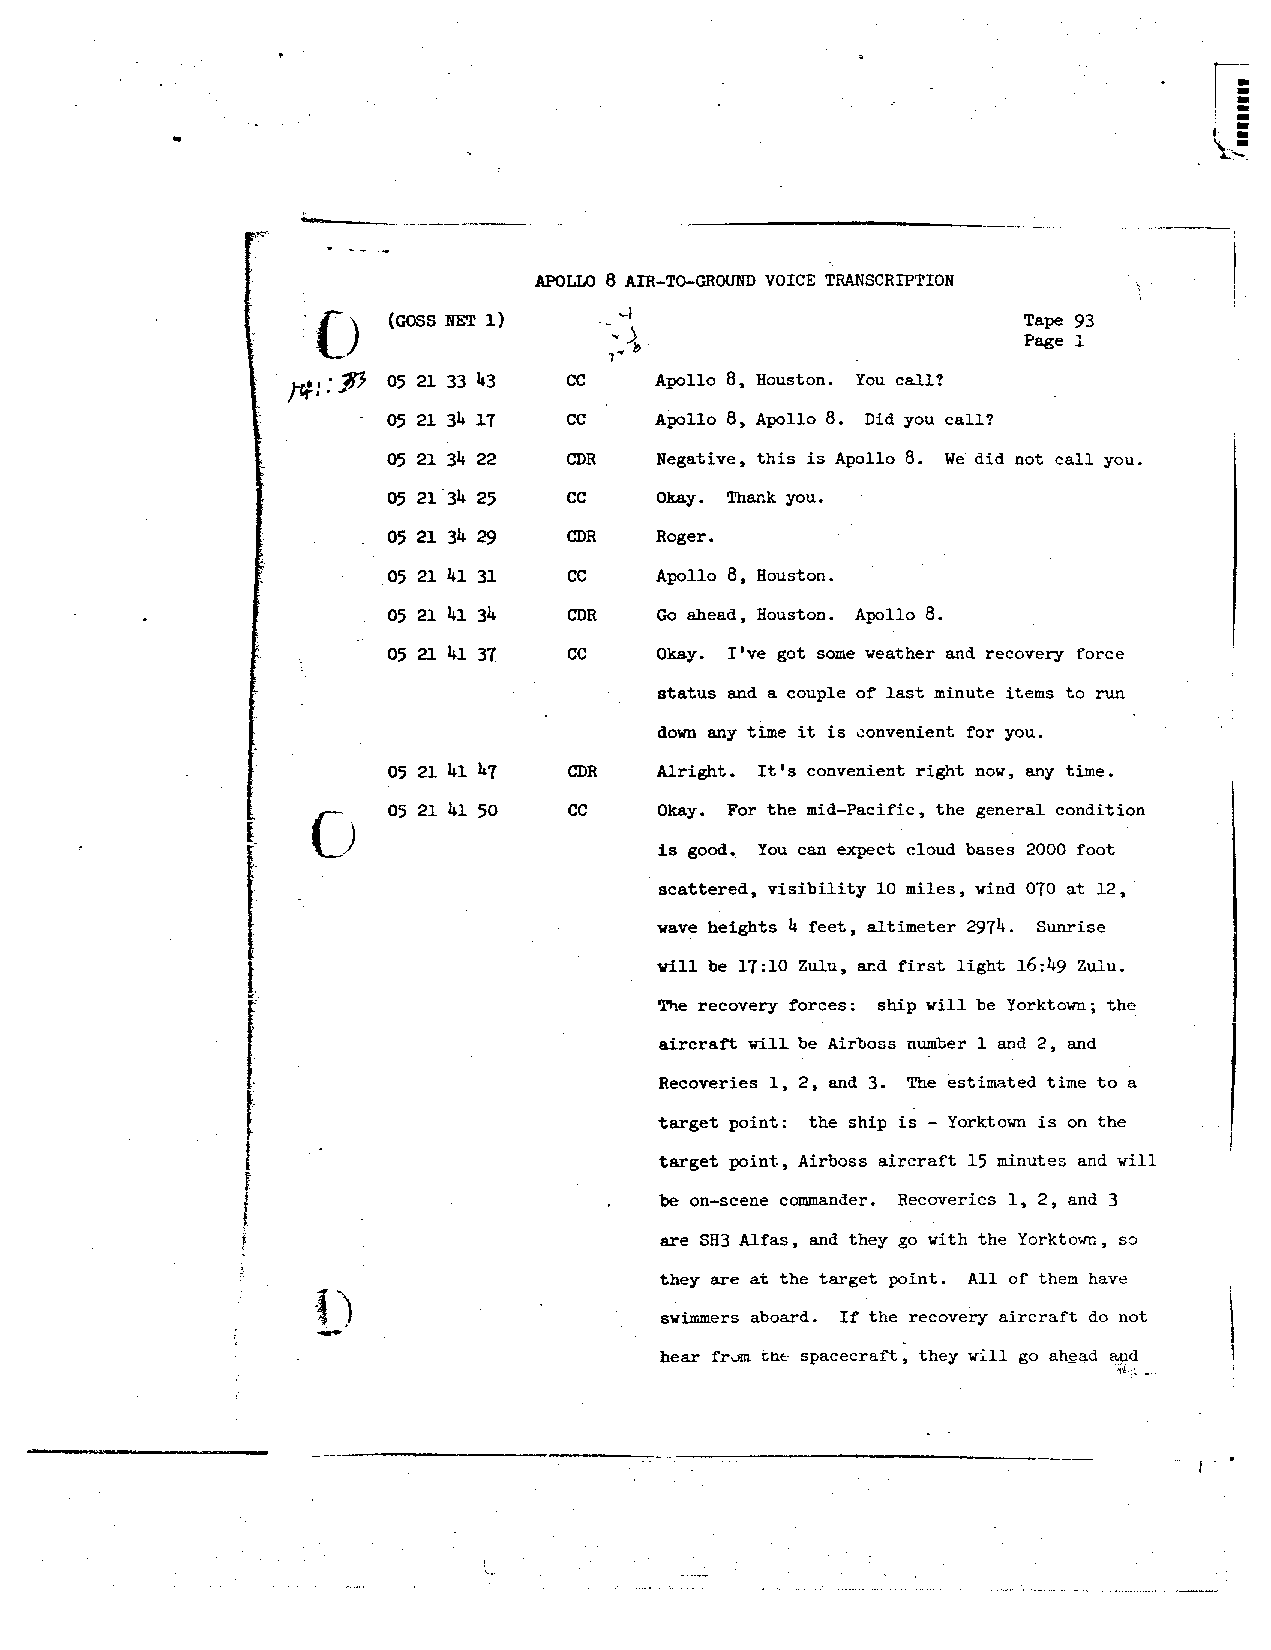 Page 733 of Apollo 8’s original transcript